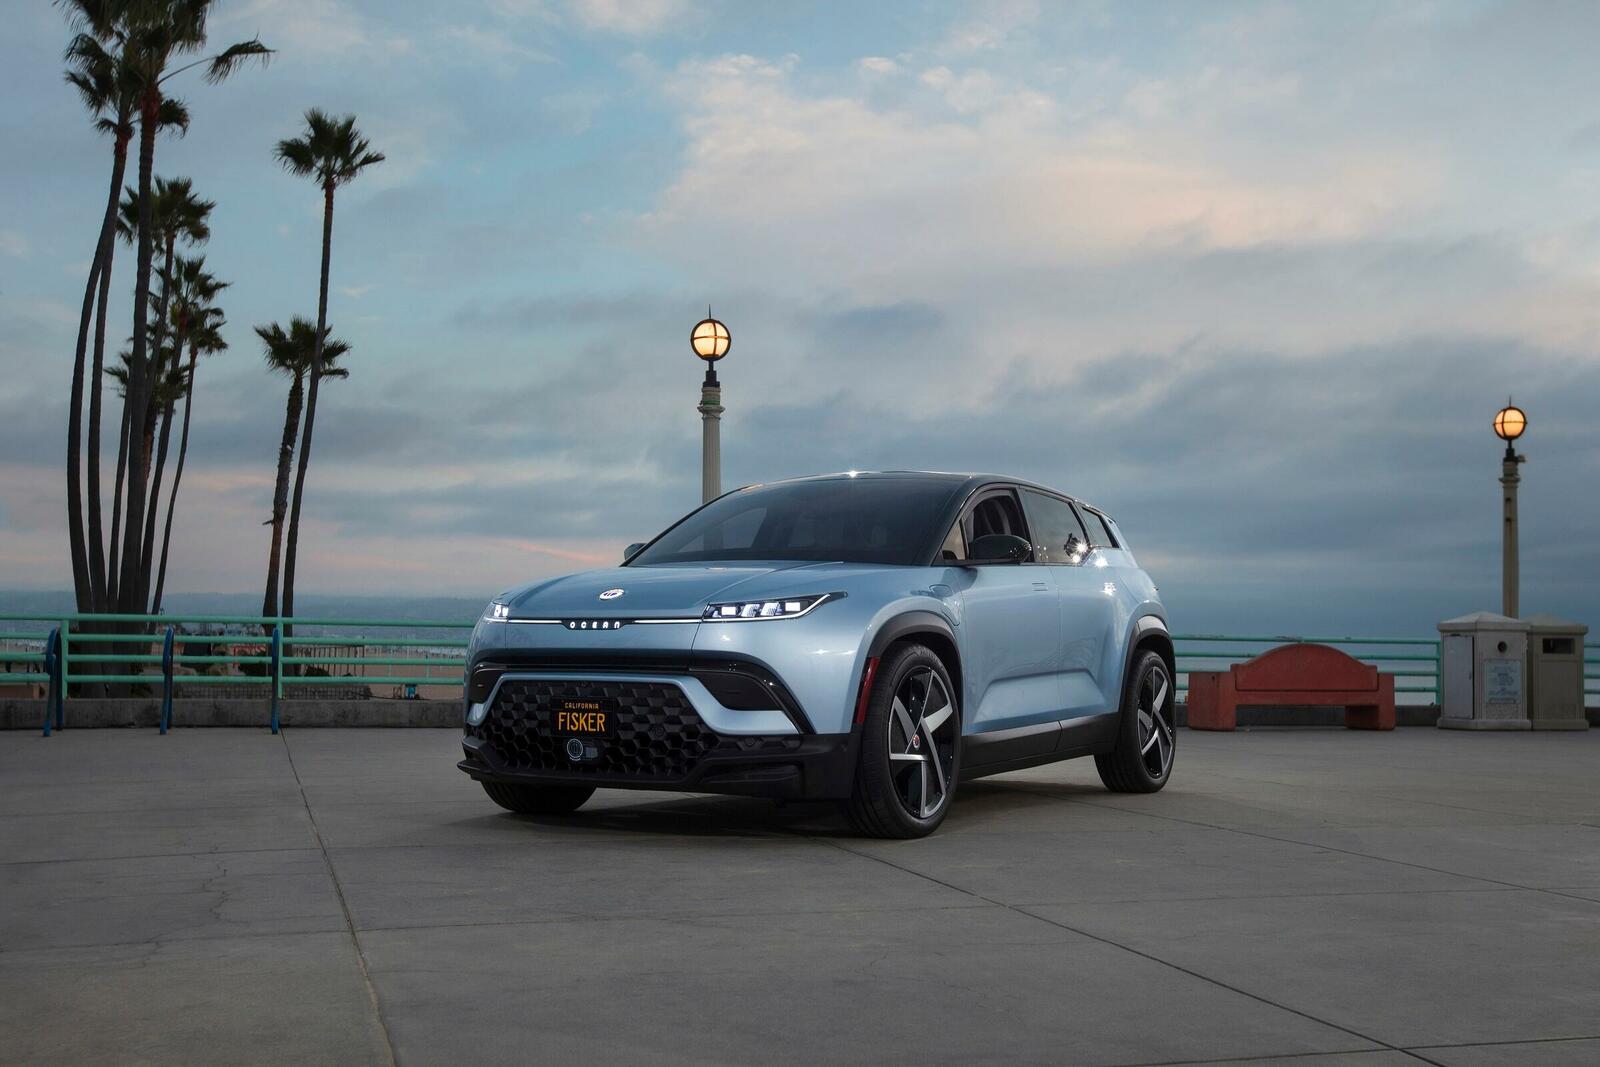 Fisker startet im November 2022 mit der Produktion seines SUV-Modells Ocean – Bridgestone stattet das Fahrzeuge mit passende Reifen aus.